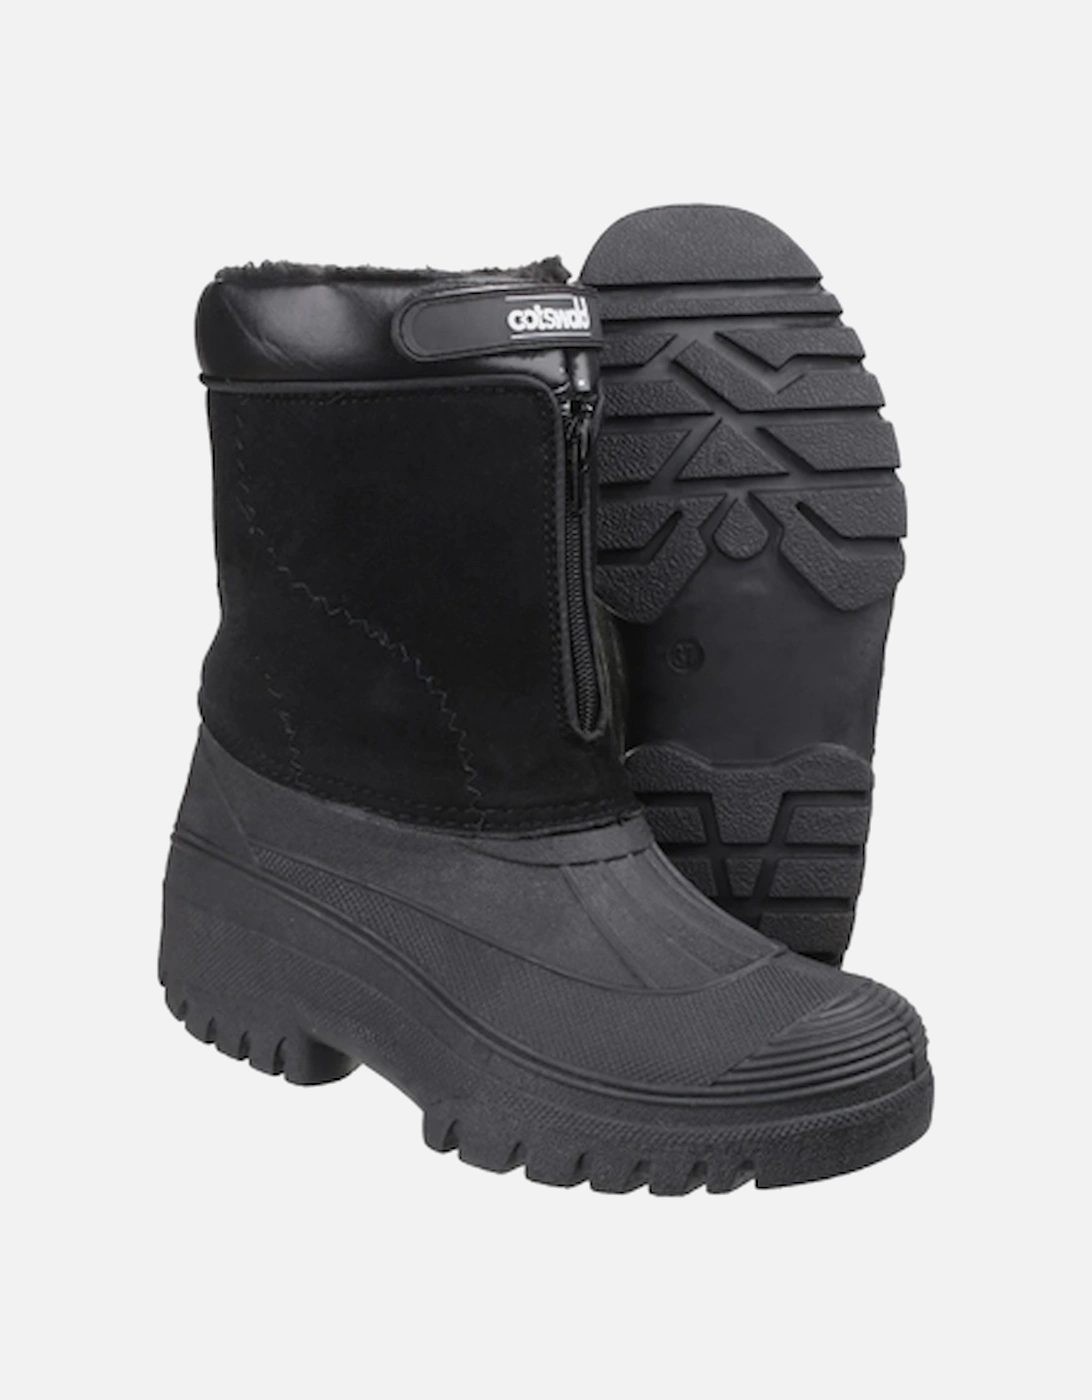 Women's Venture Waterproof Winter Boot Black